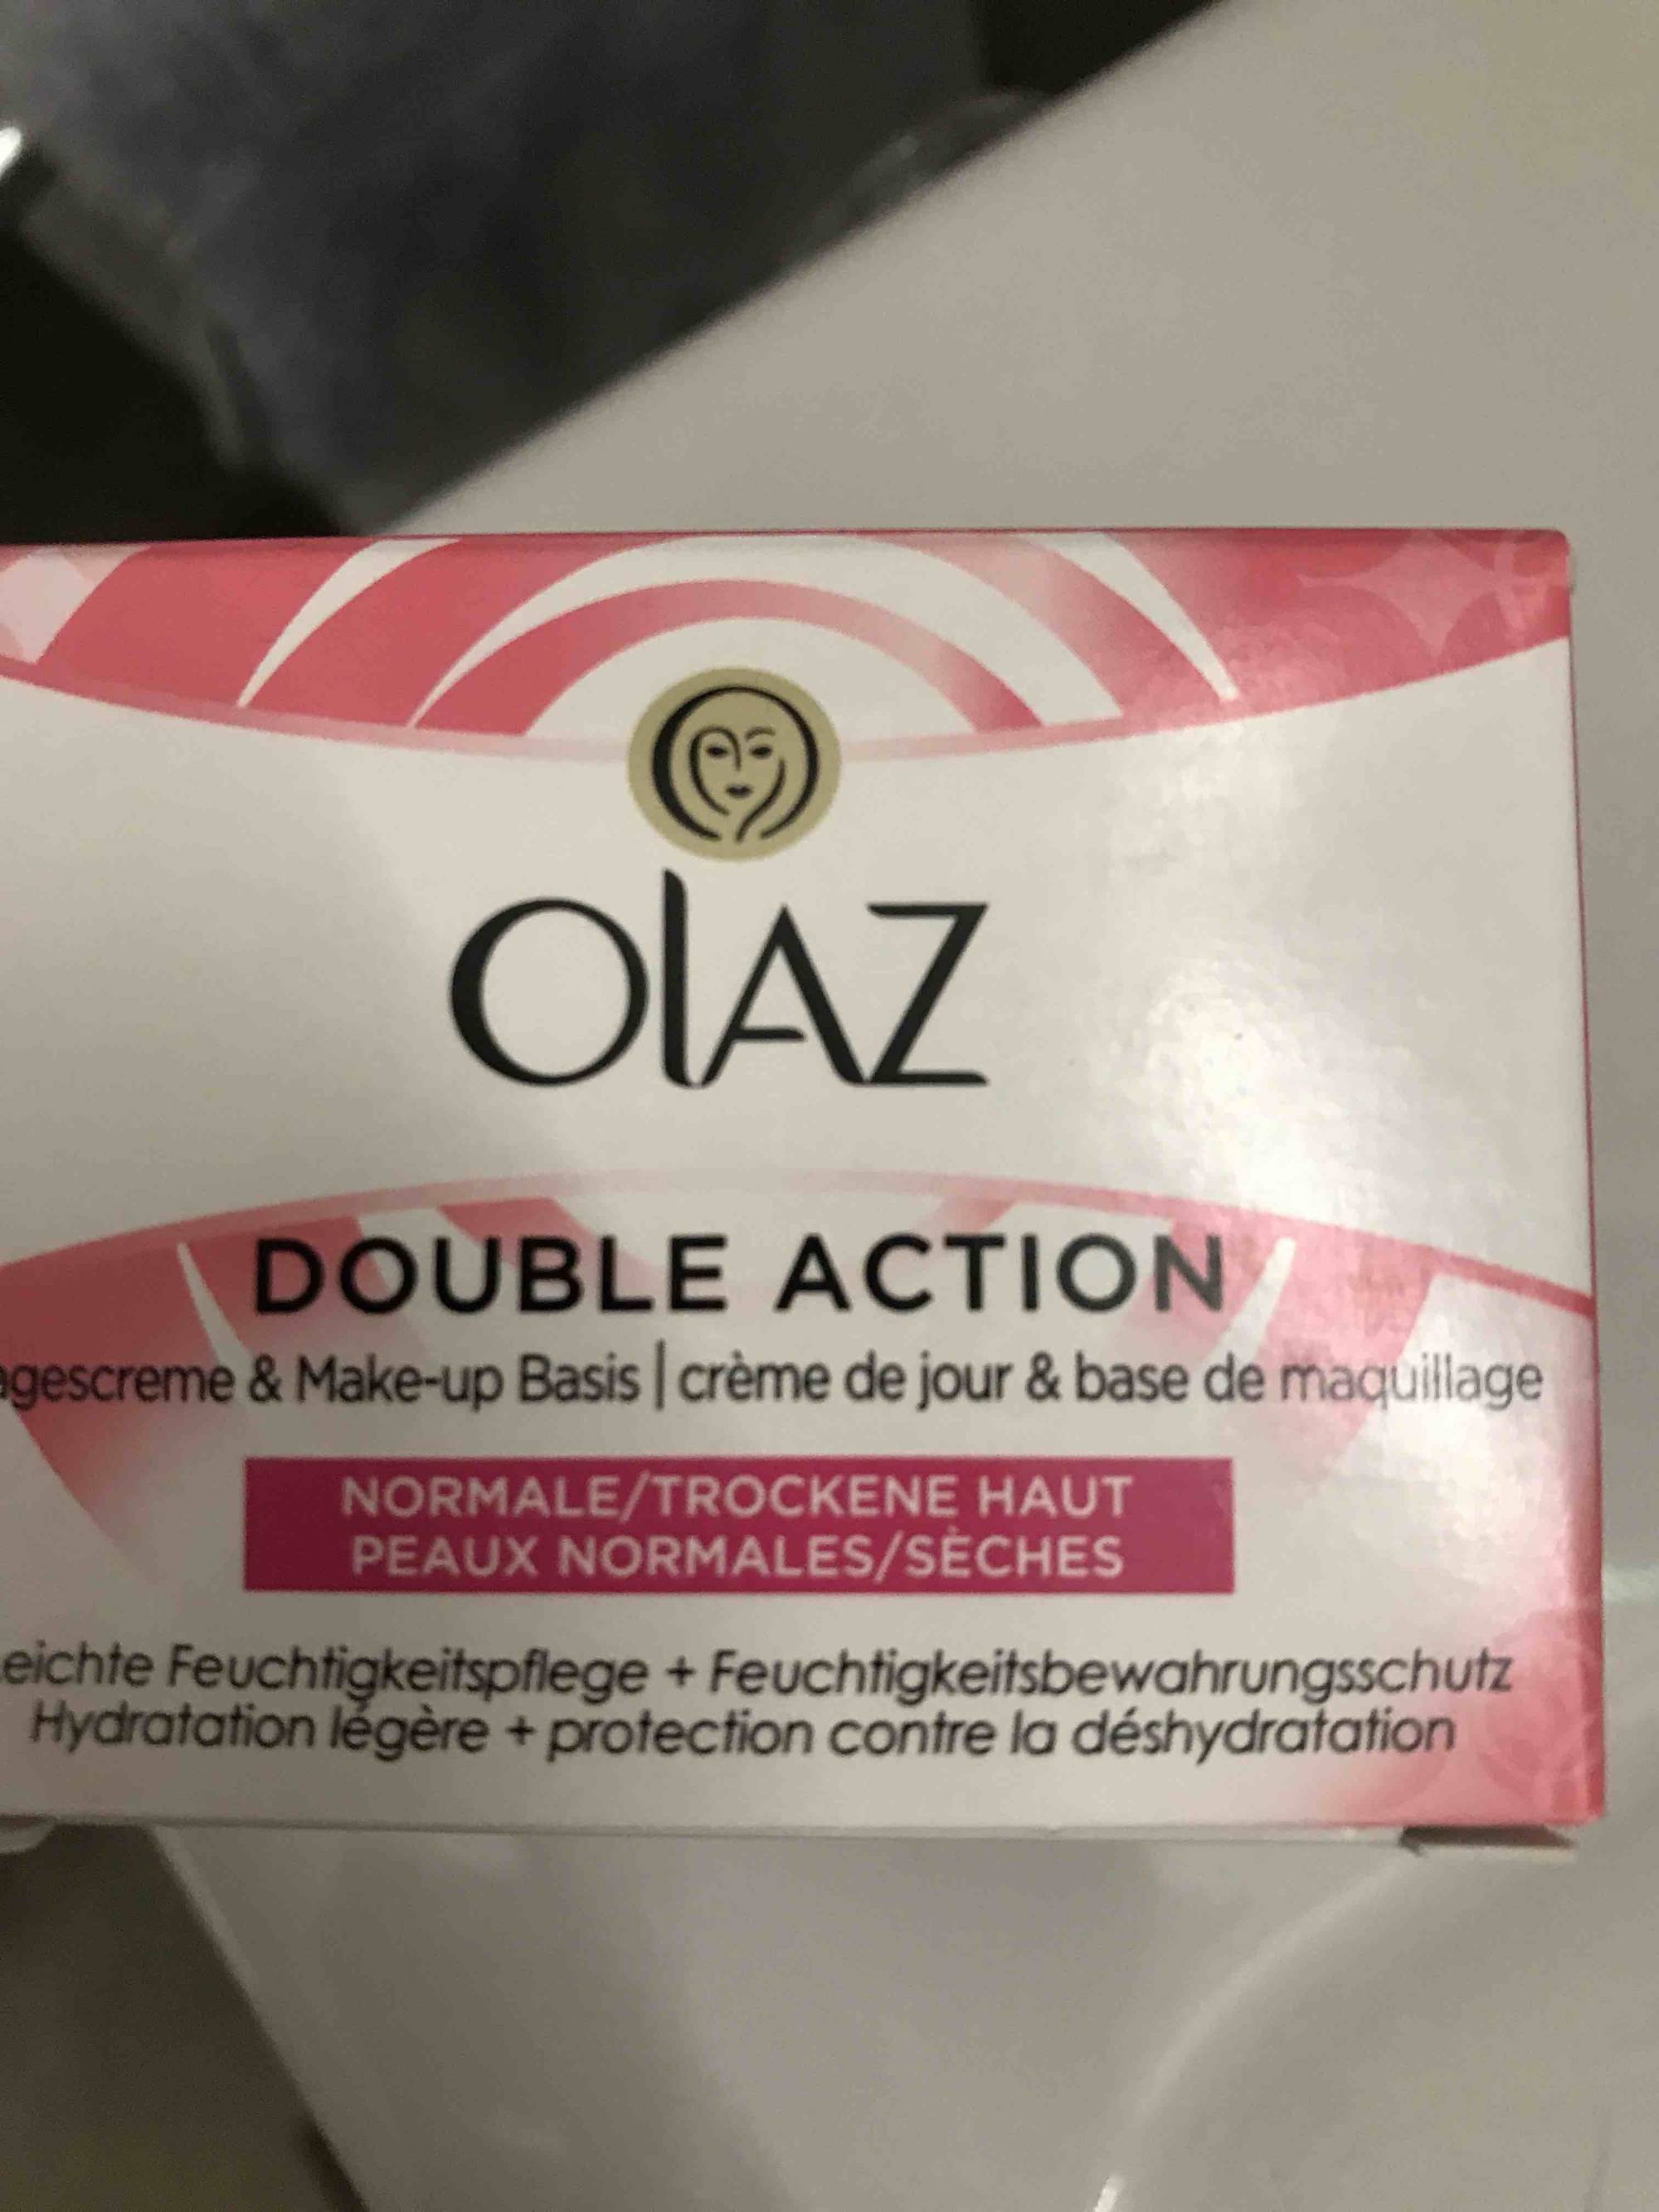 OLAZ - Double action - Crème de jour & base de maquillage